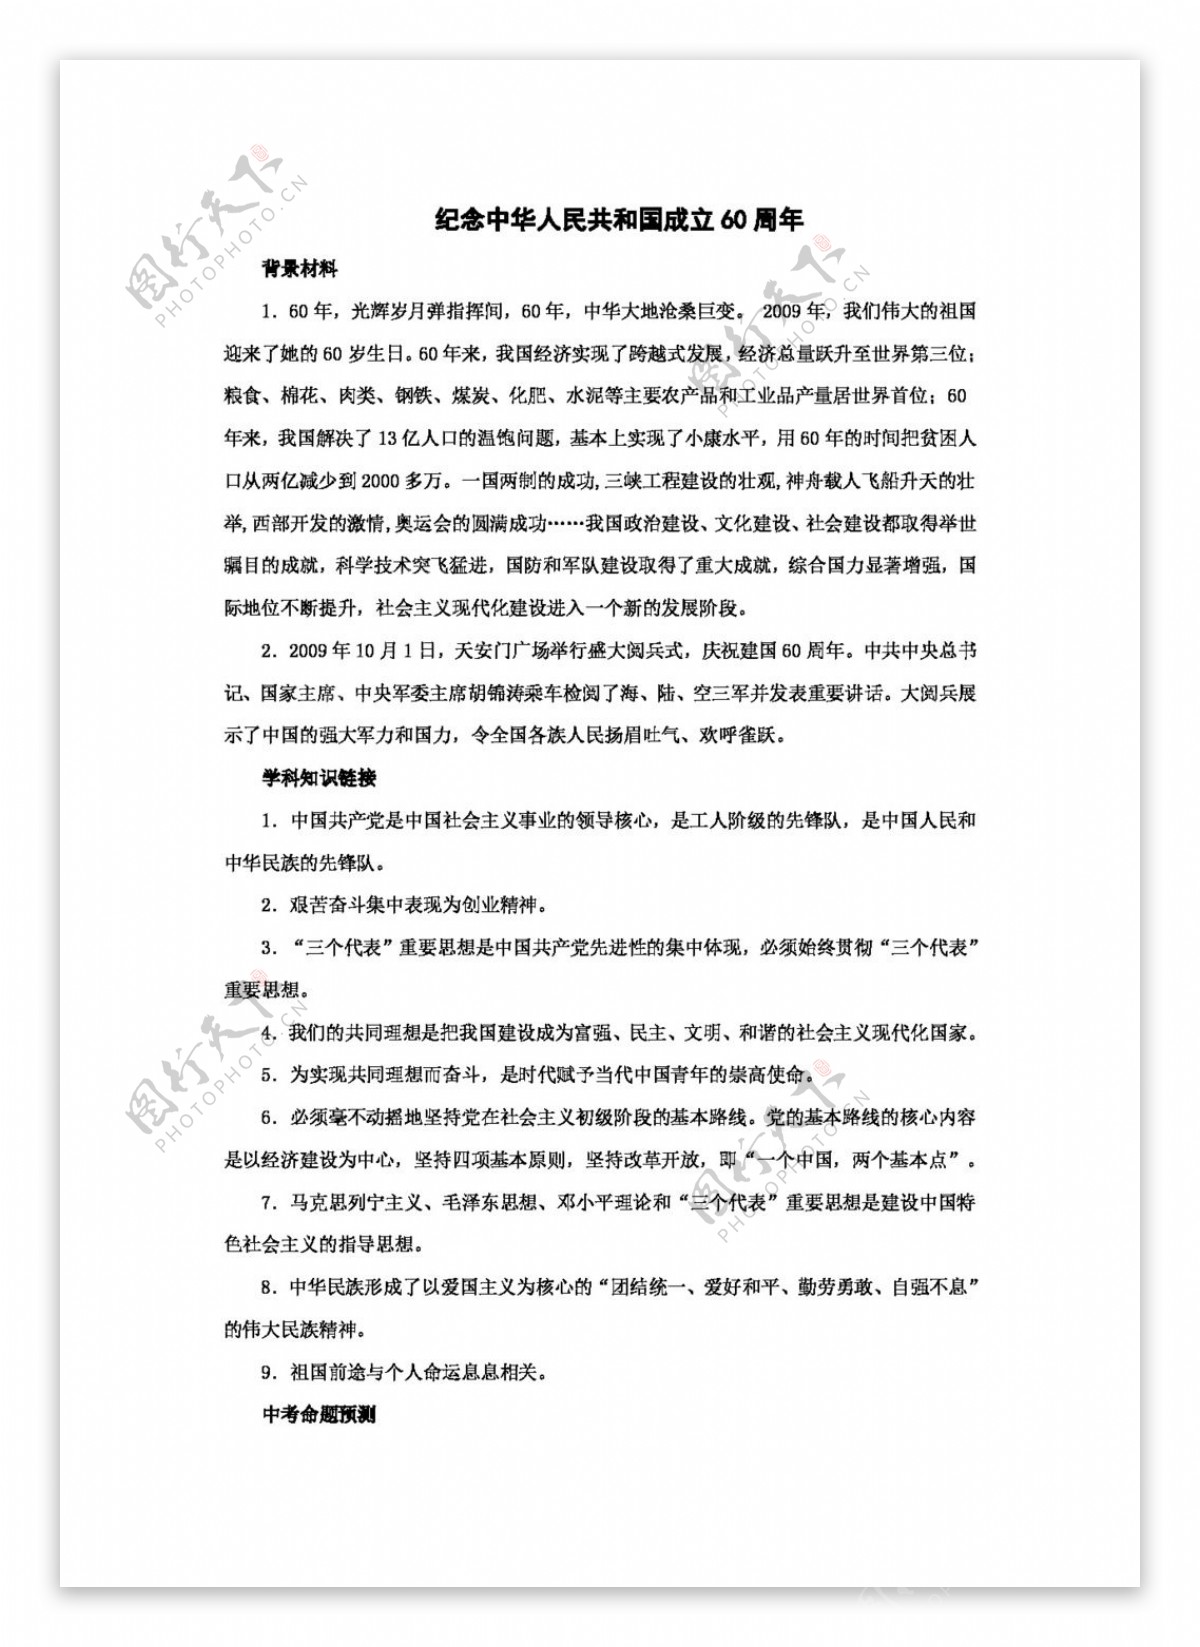 中考专区思想品德时政热点纪念中华人民共和国成立60周年